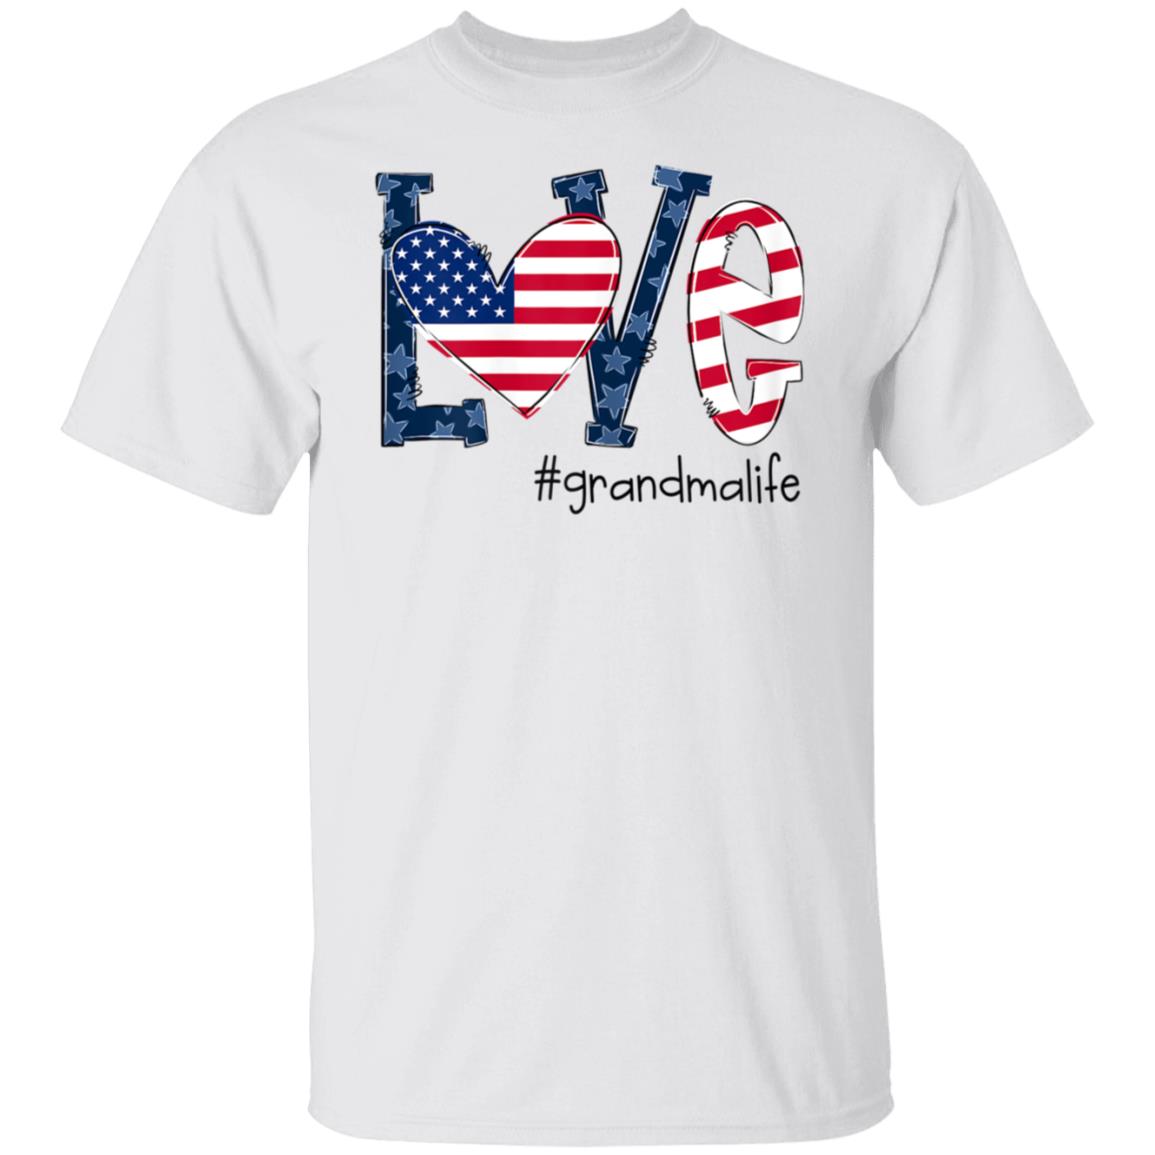 Womens Love Grandma Life American Flag Shirt 4th Of July White T-shirt